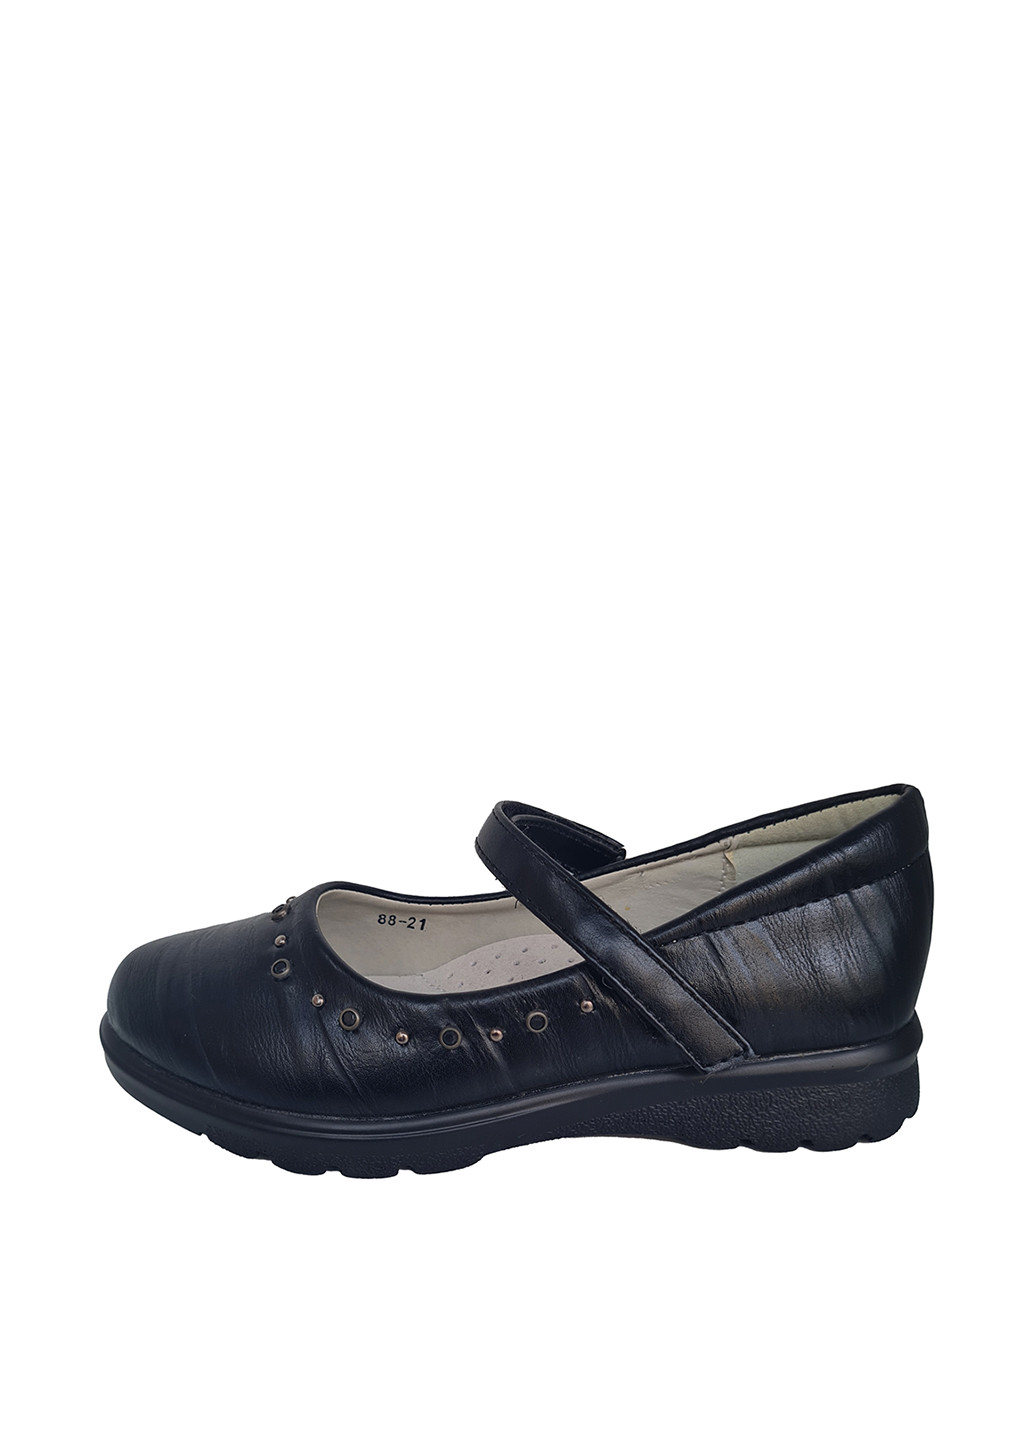 Черные туфли без каблука Yalike